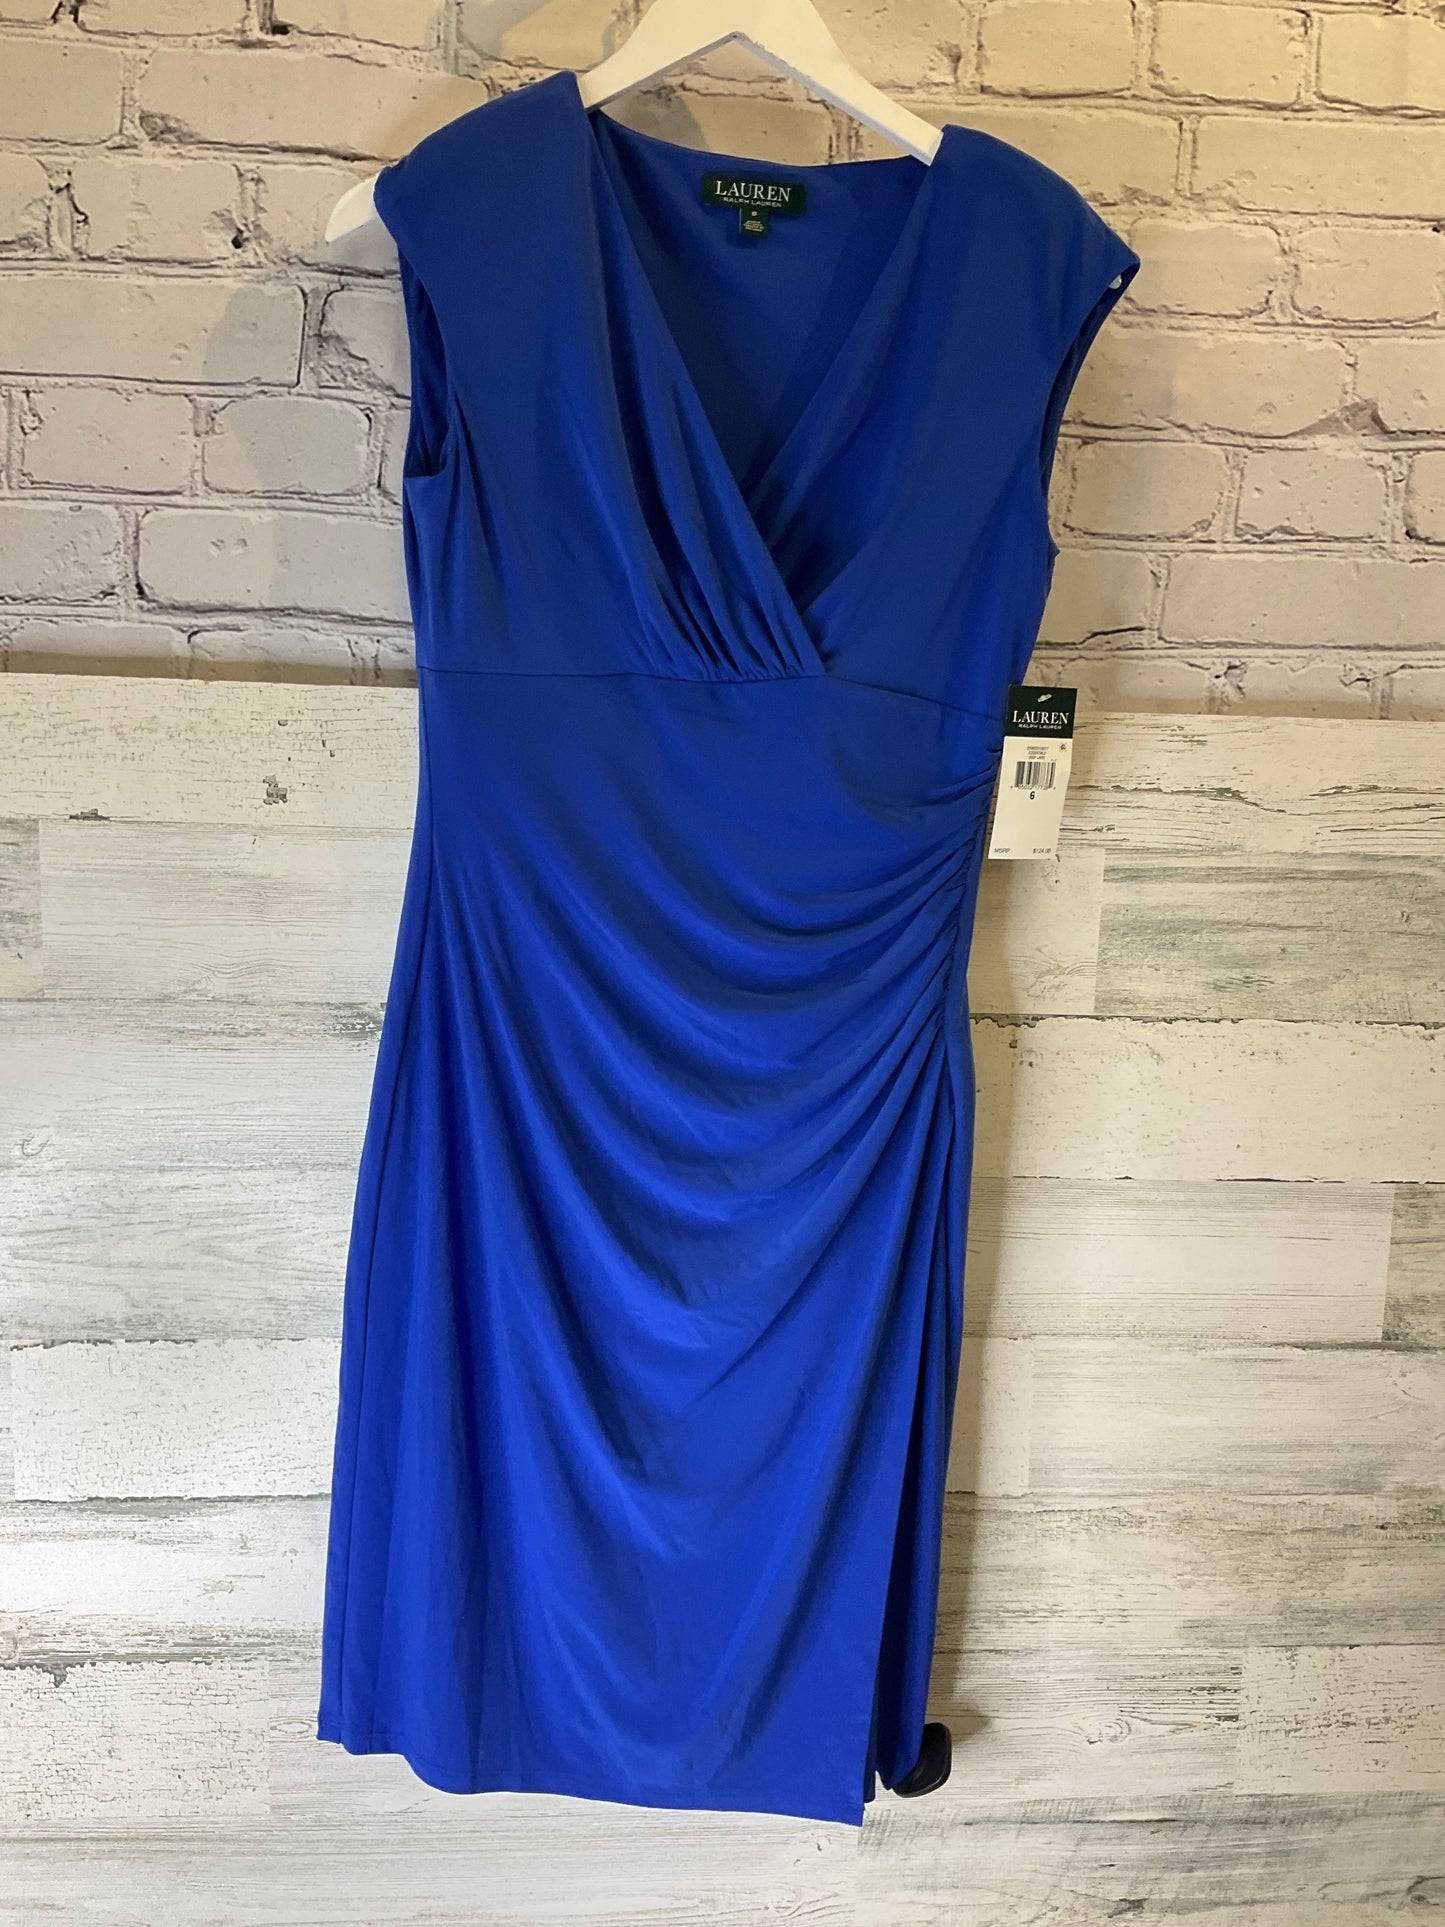 Blue Dress Casual Short Ralph Lauren, Size S